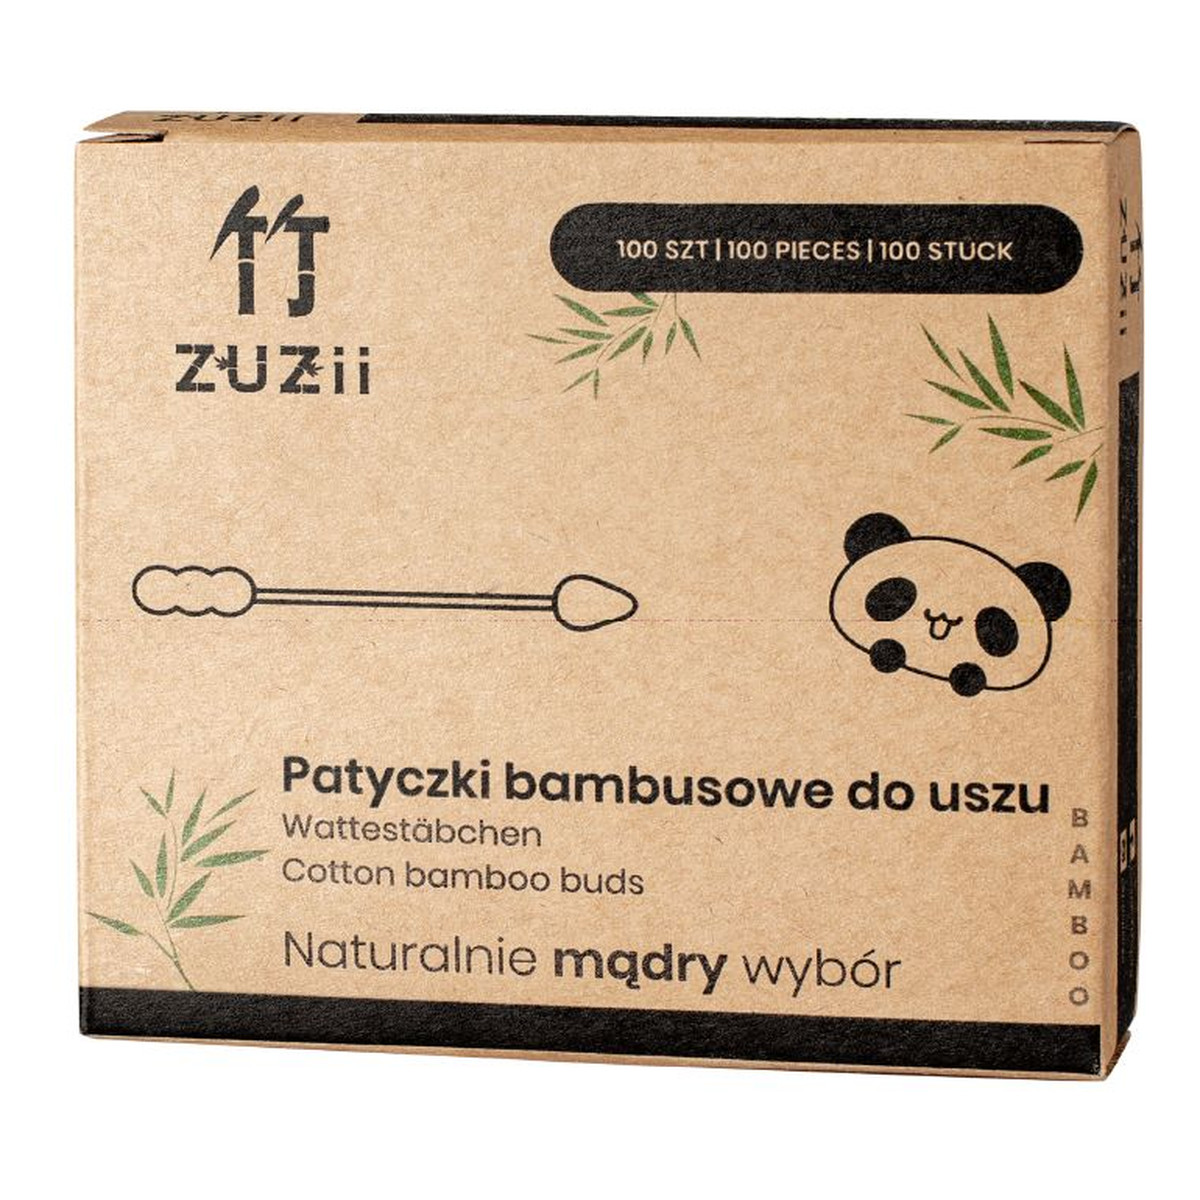 ZUZii Patyczki higieniczne bambusowe z bawełną (bałwanek-szpic) 100 szt